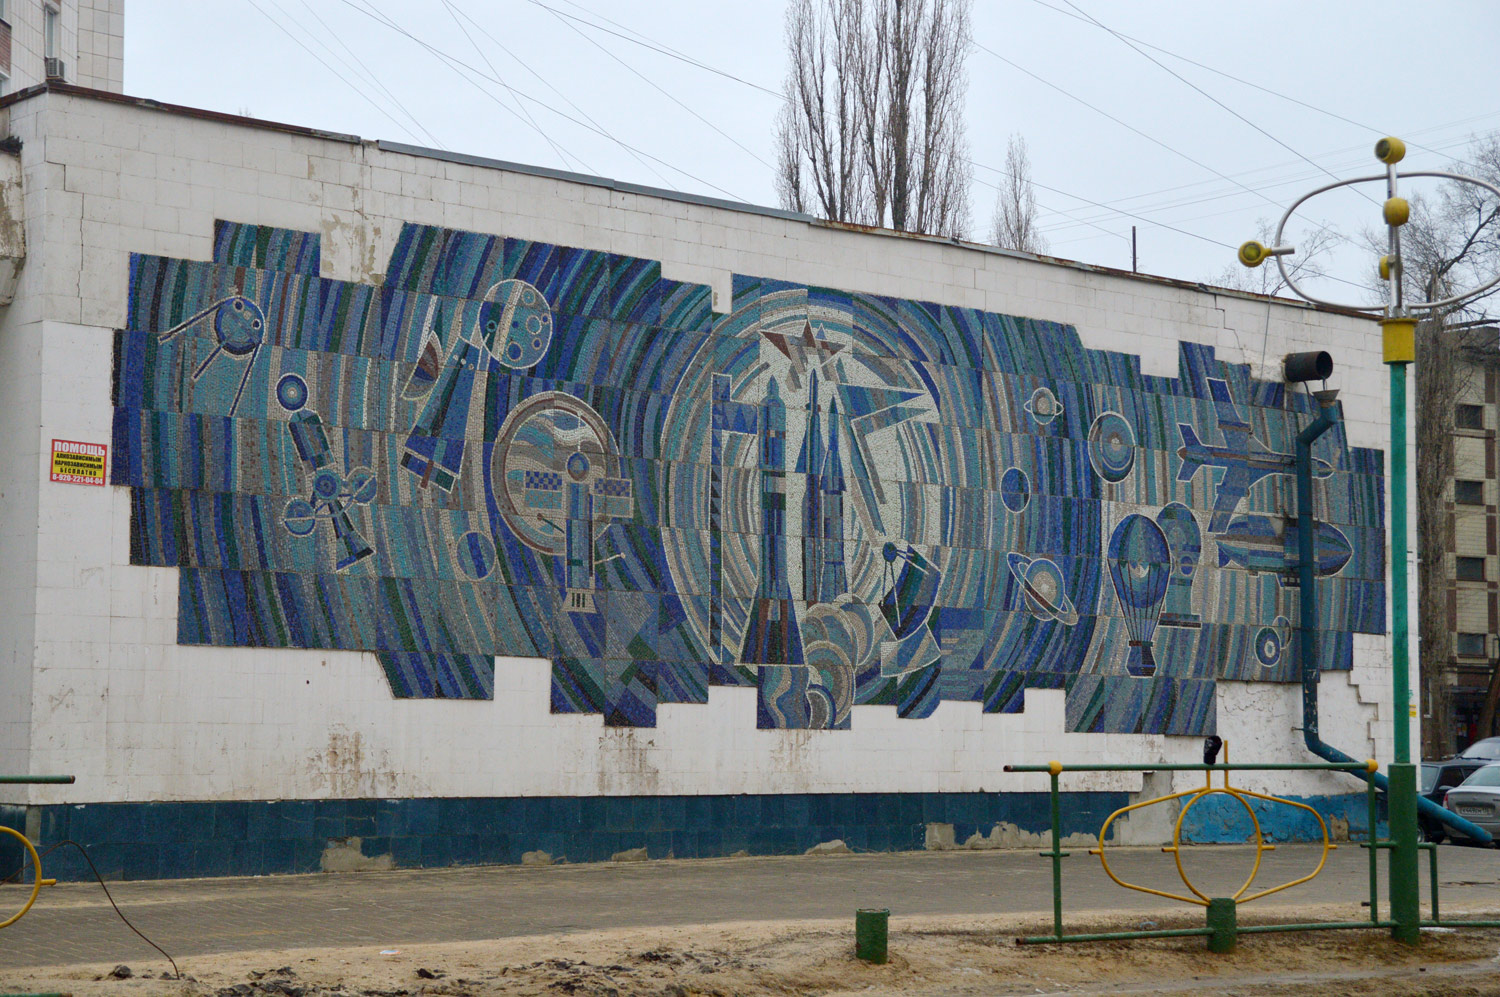 Woronesch, . Монументальное искусство (мозаики, росписи). Monumental art (mosaics, murals) Voronezh Region